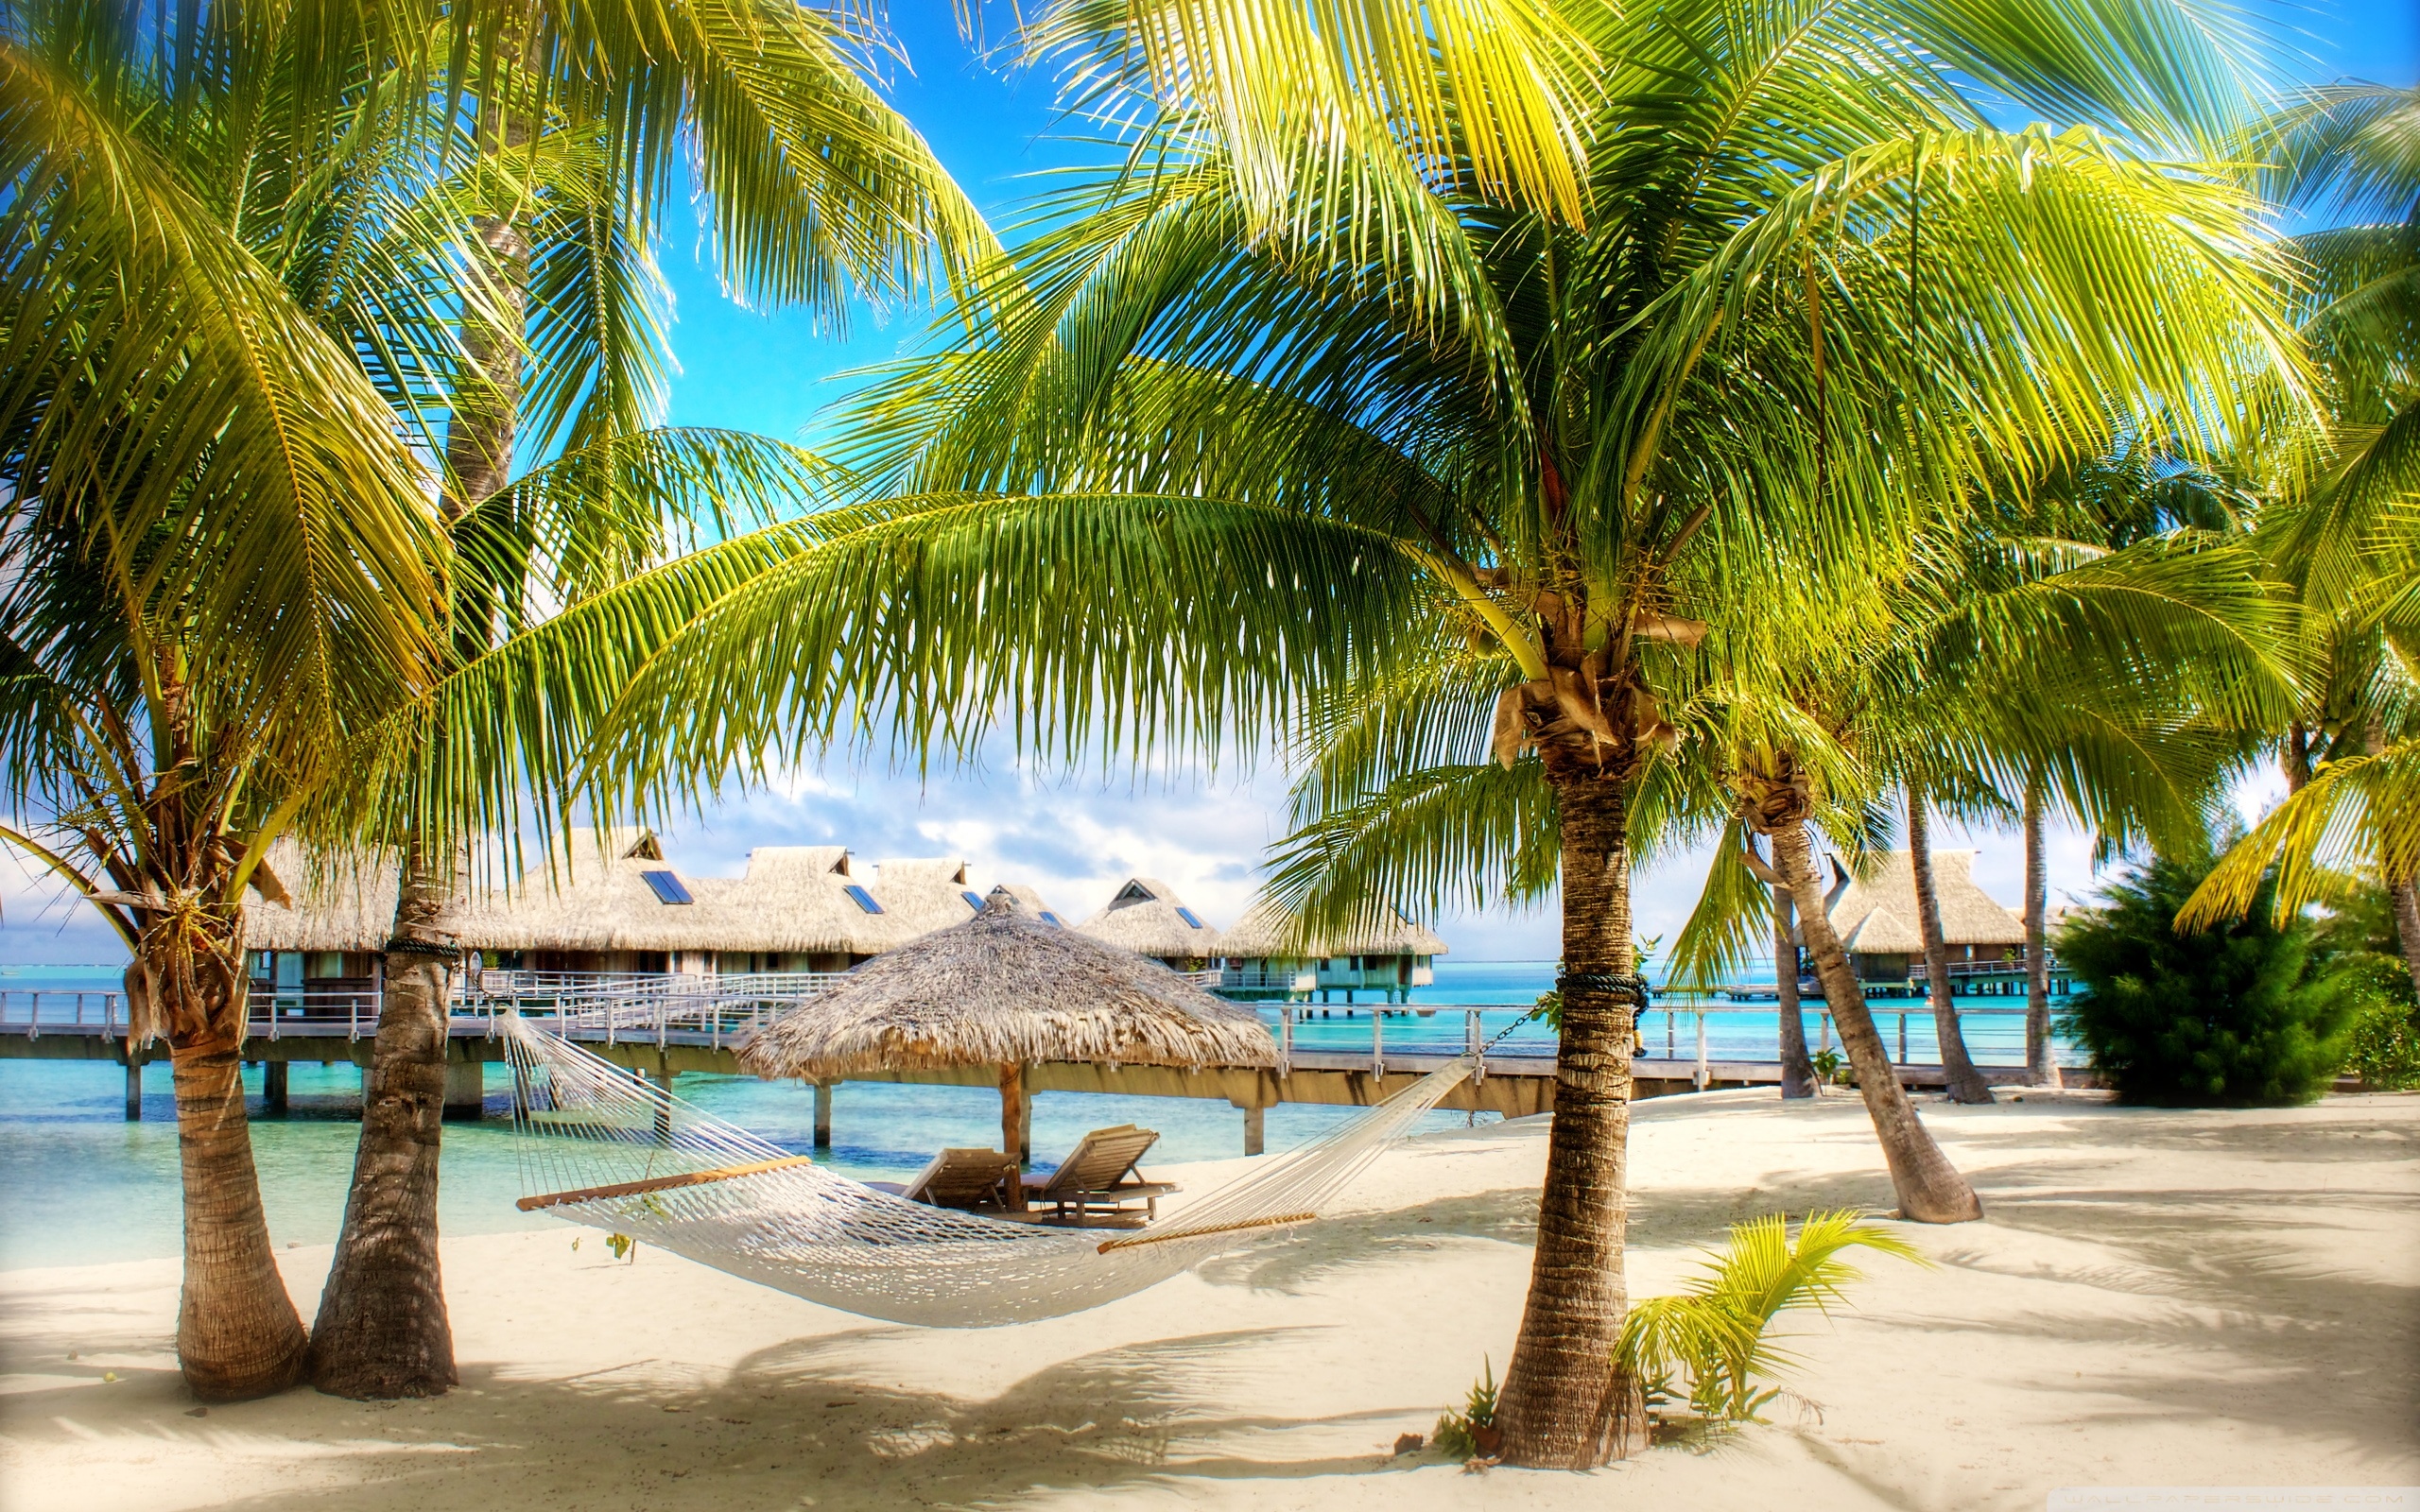 Tropical Beach Resort HD desktop wallpaper : High Definition ...